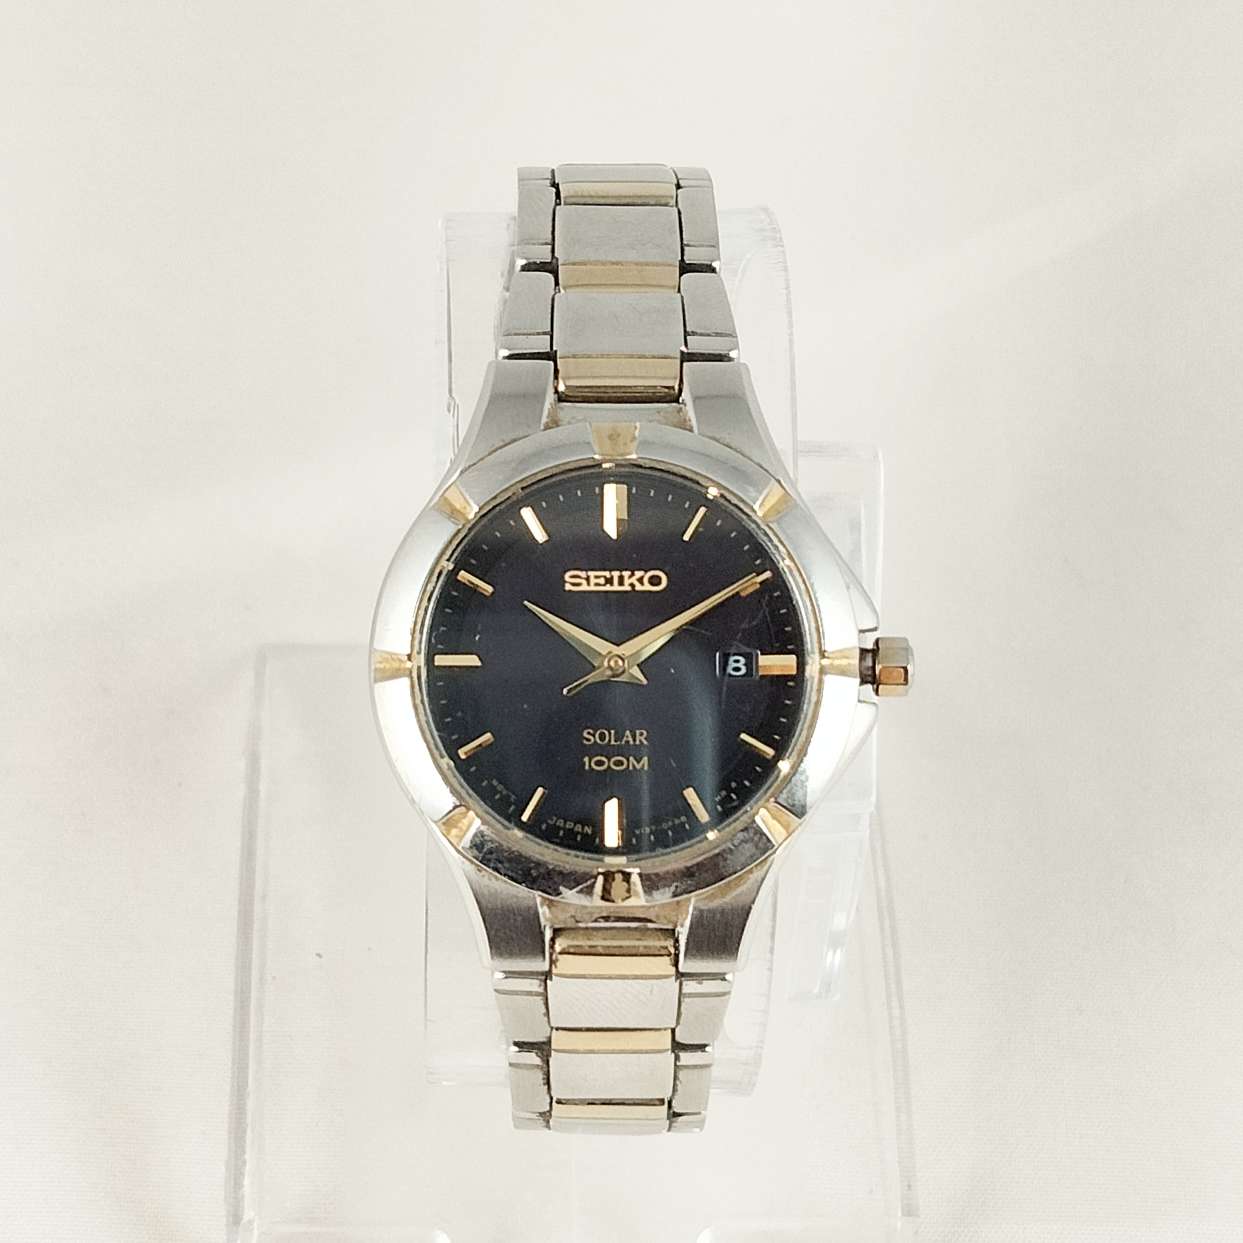 Seiko Solar 100 M Watch, Black Dial, Bracelet Strap